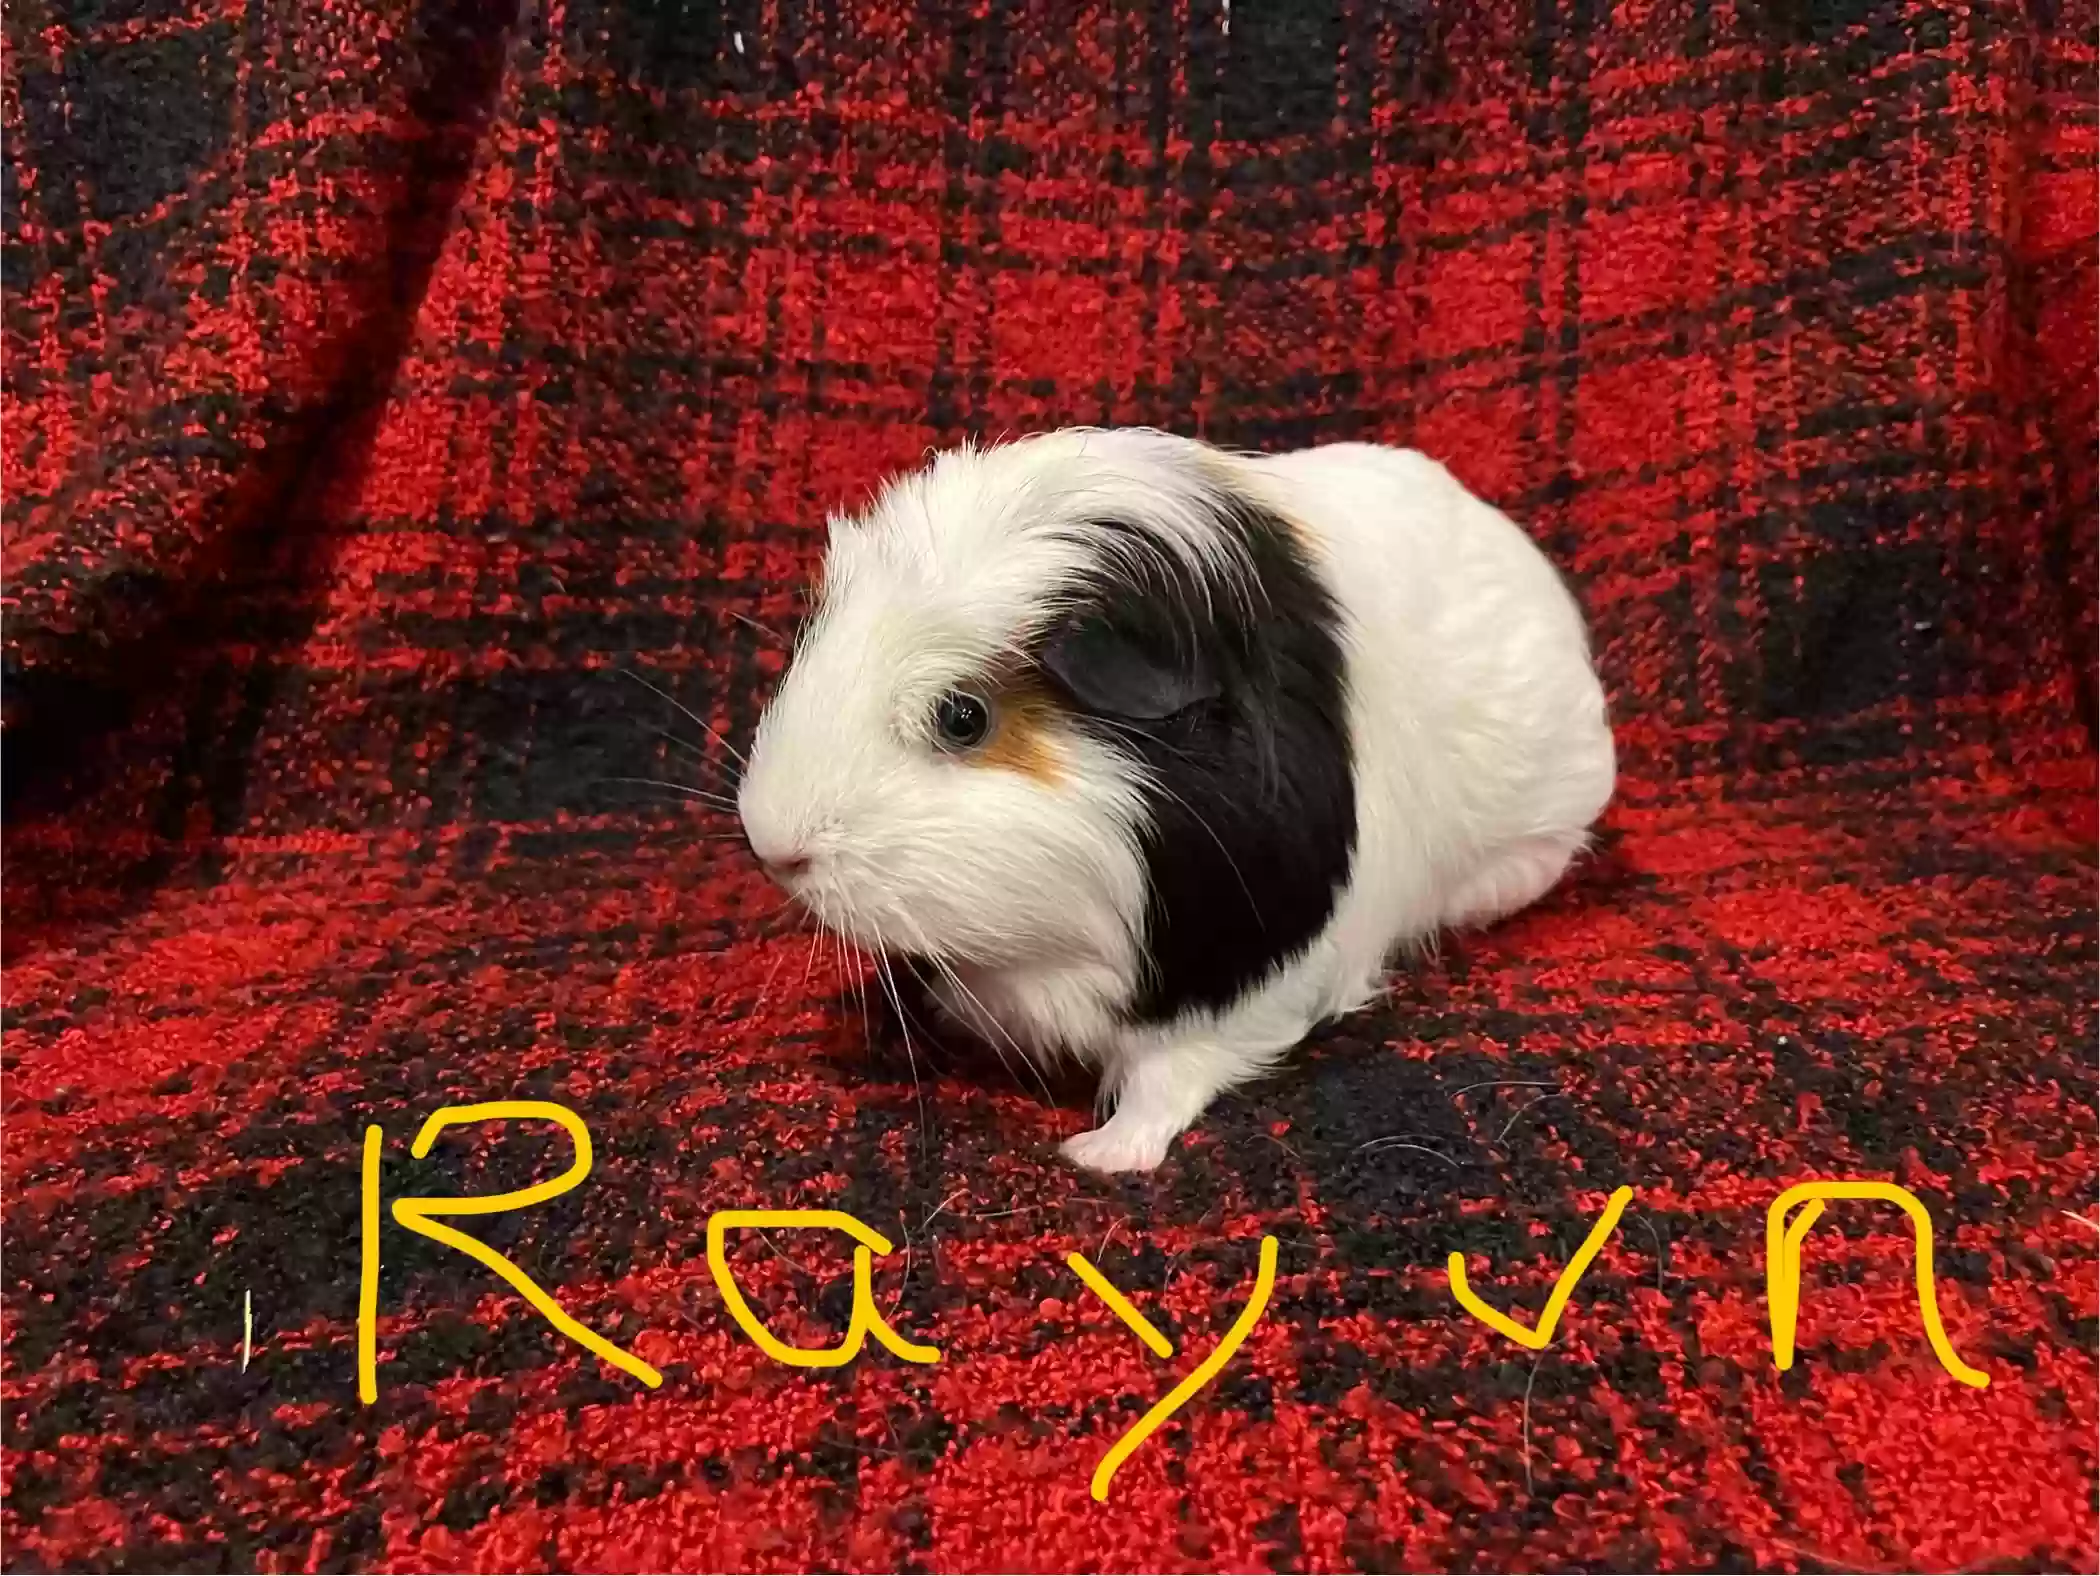 adoptable  in Florence,AZ named Rayvn